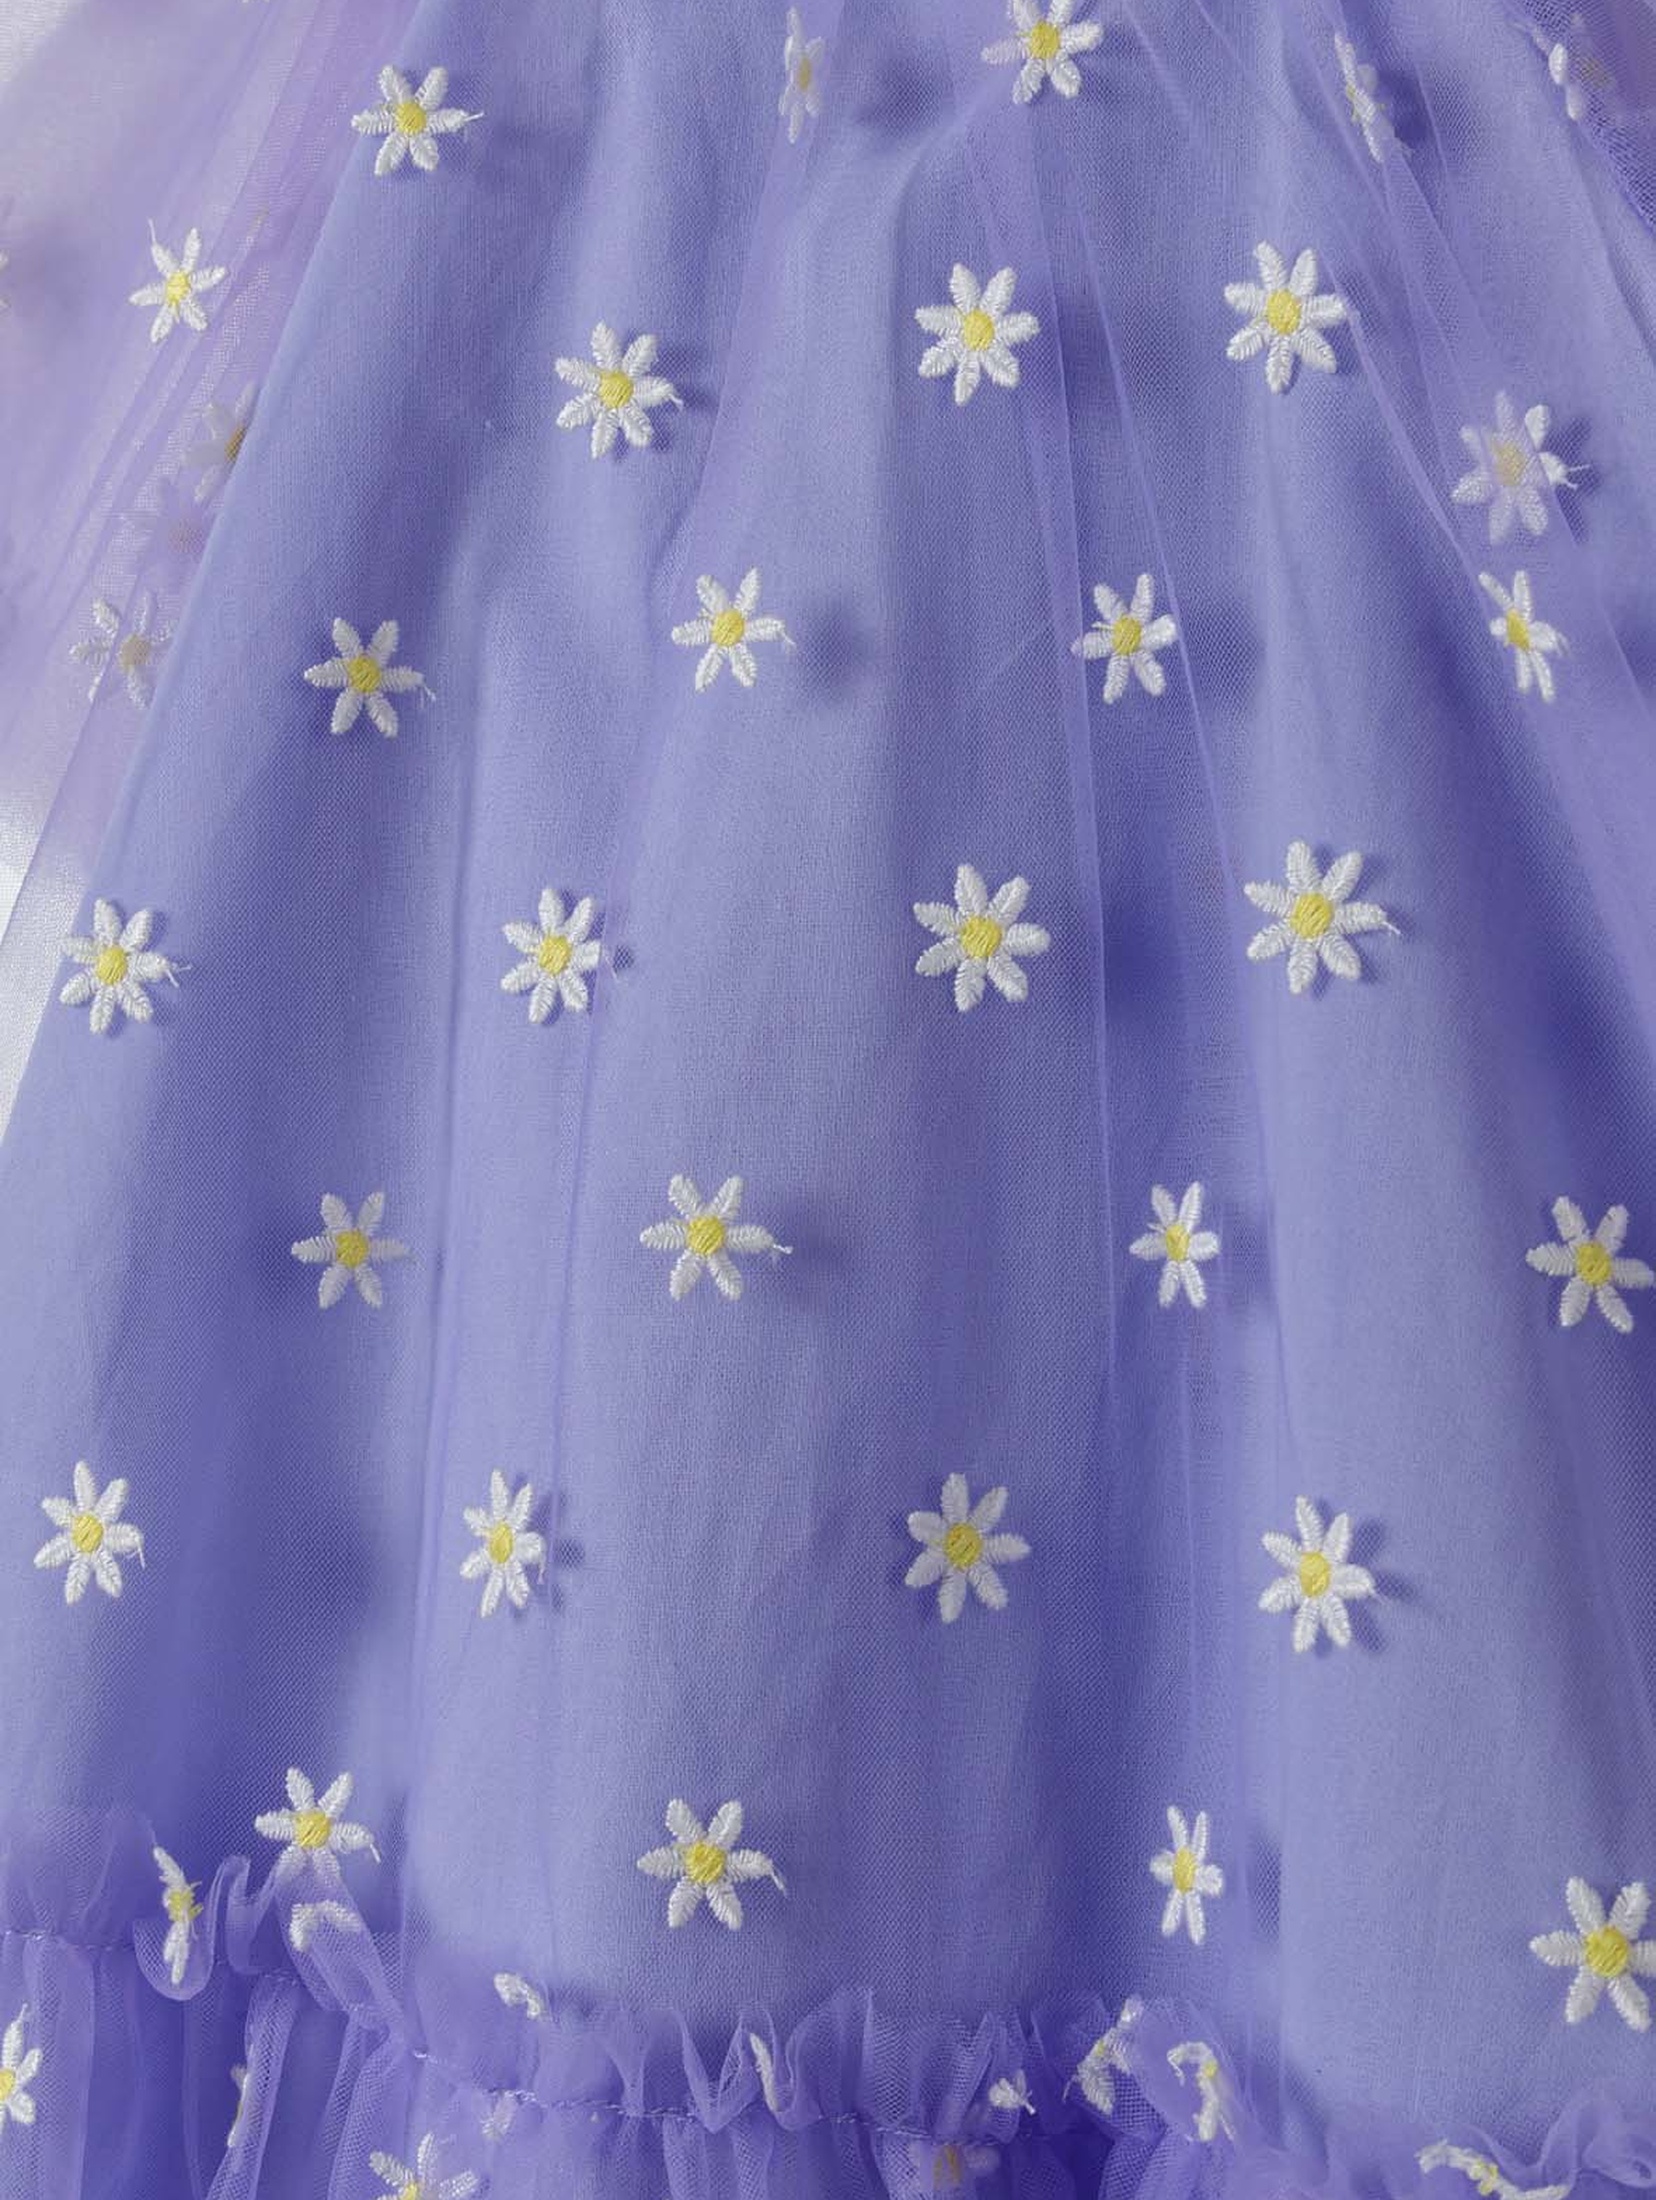 Fioletowa tiulowa sukienka w kwiatki dla niemowlaka